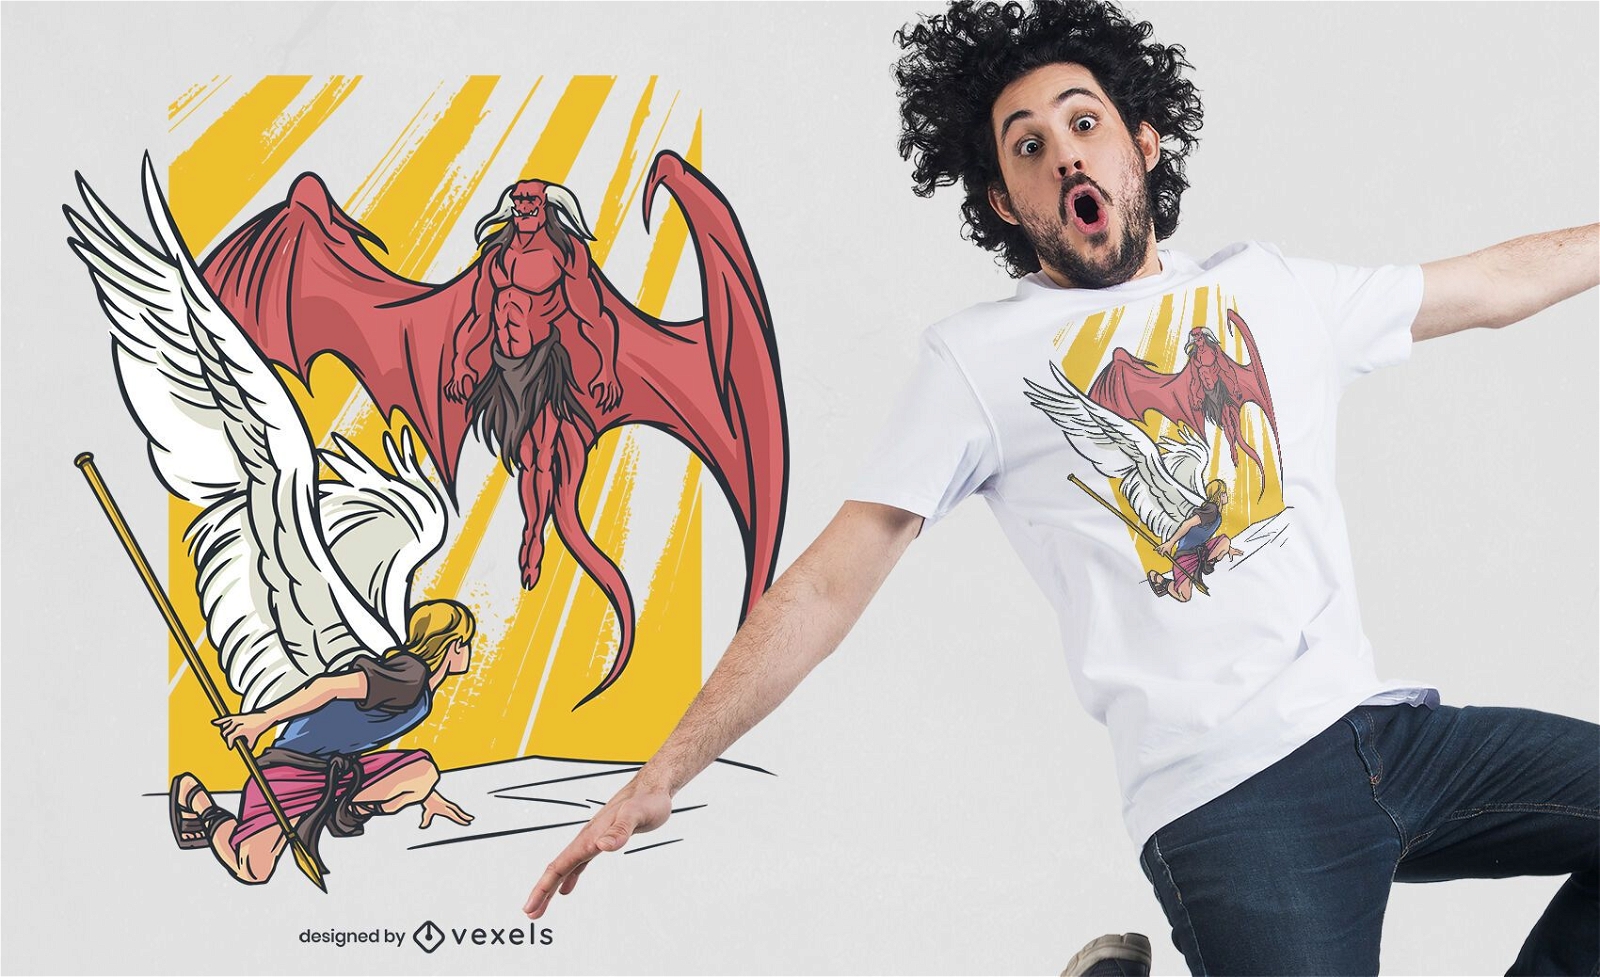 Baixar Vetor De Design De Camisetas De Demônios E Anjos